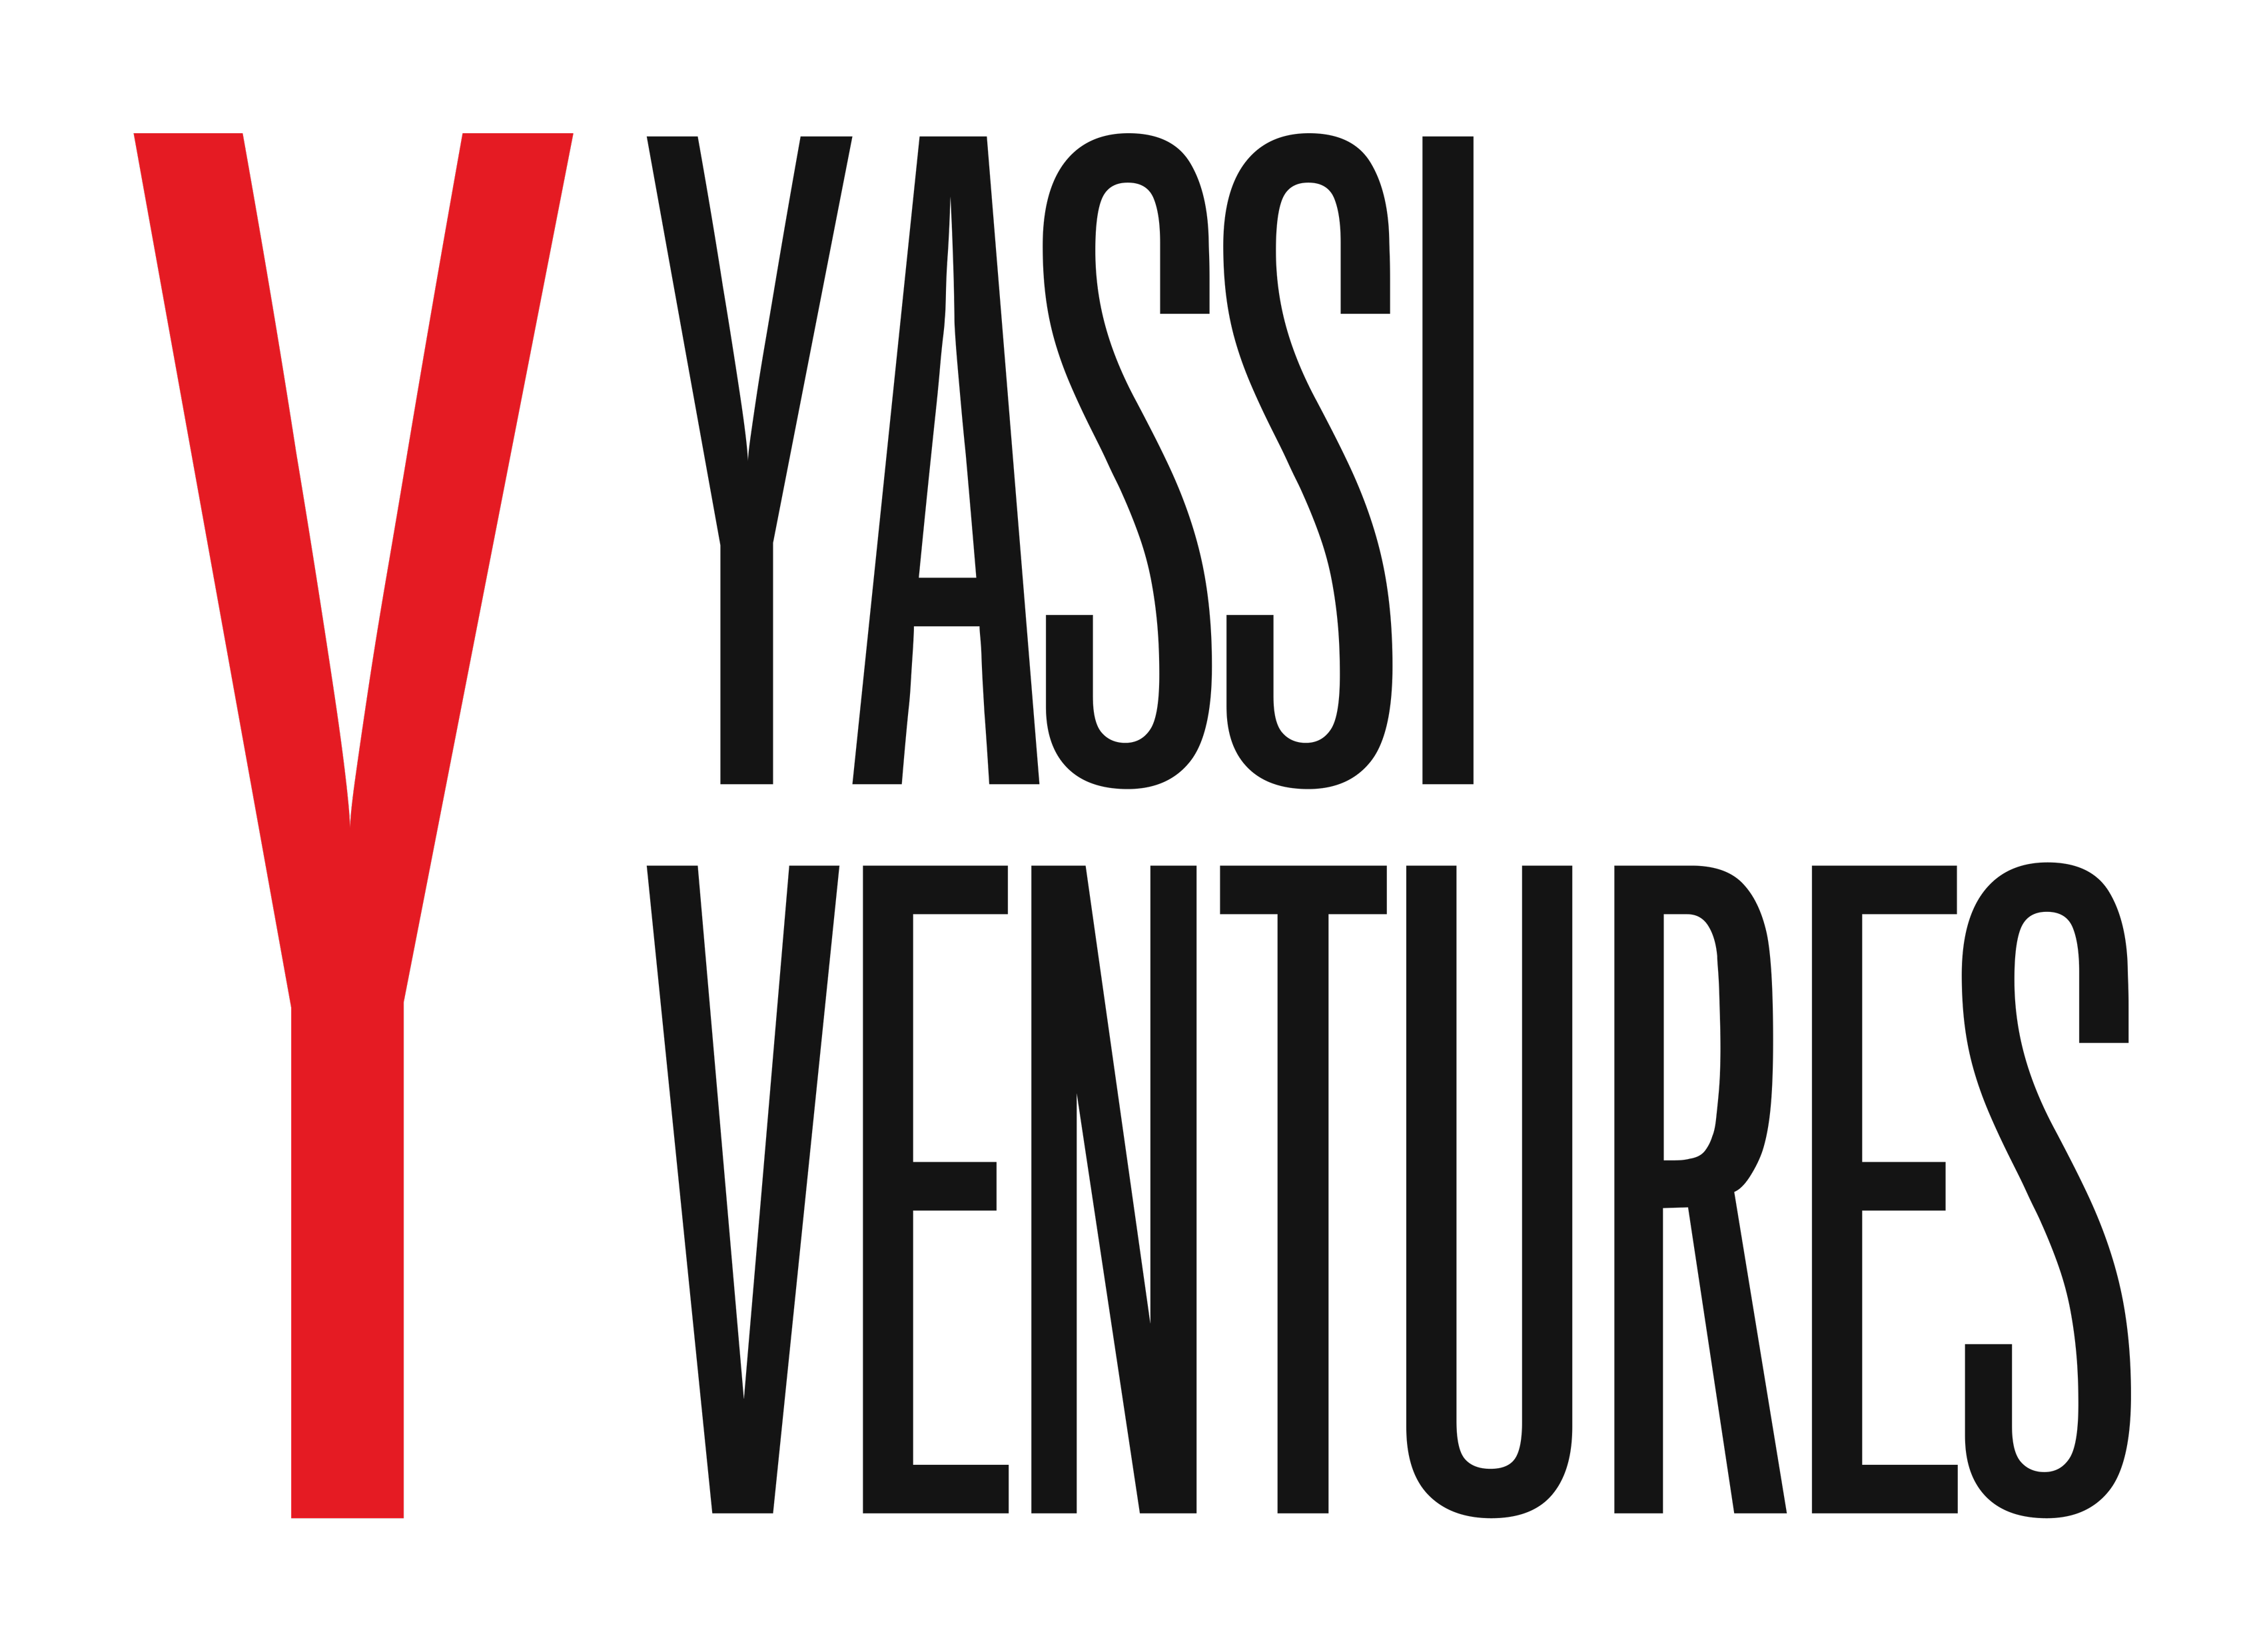 Yassi Ventures